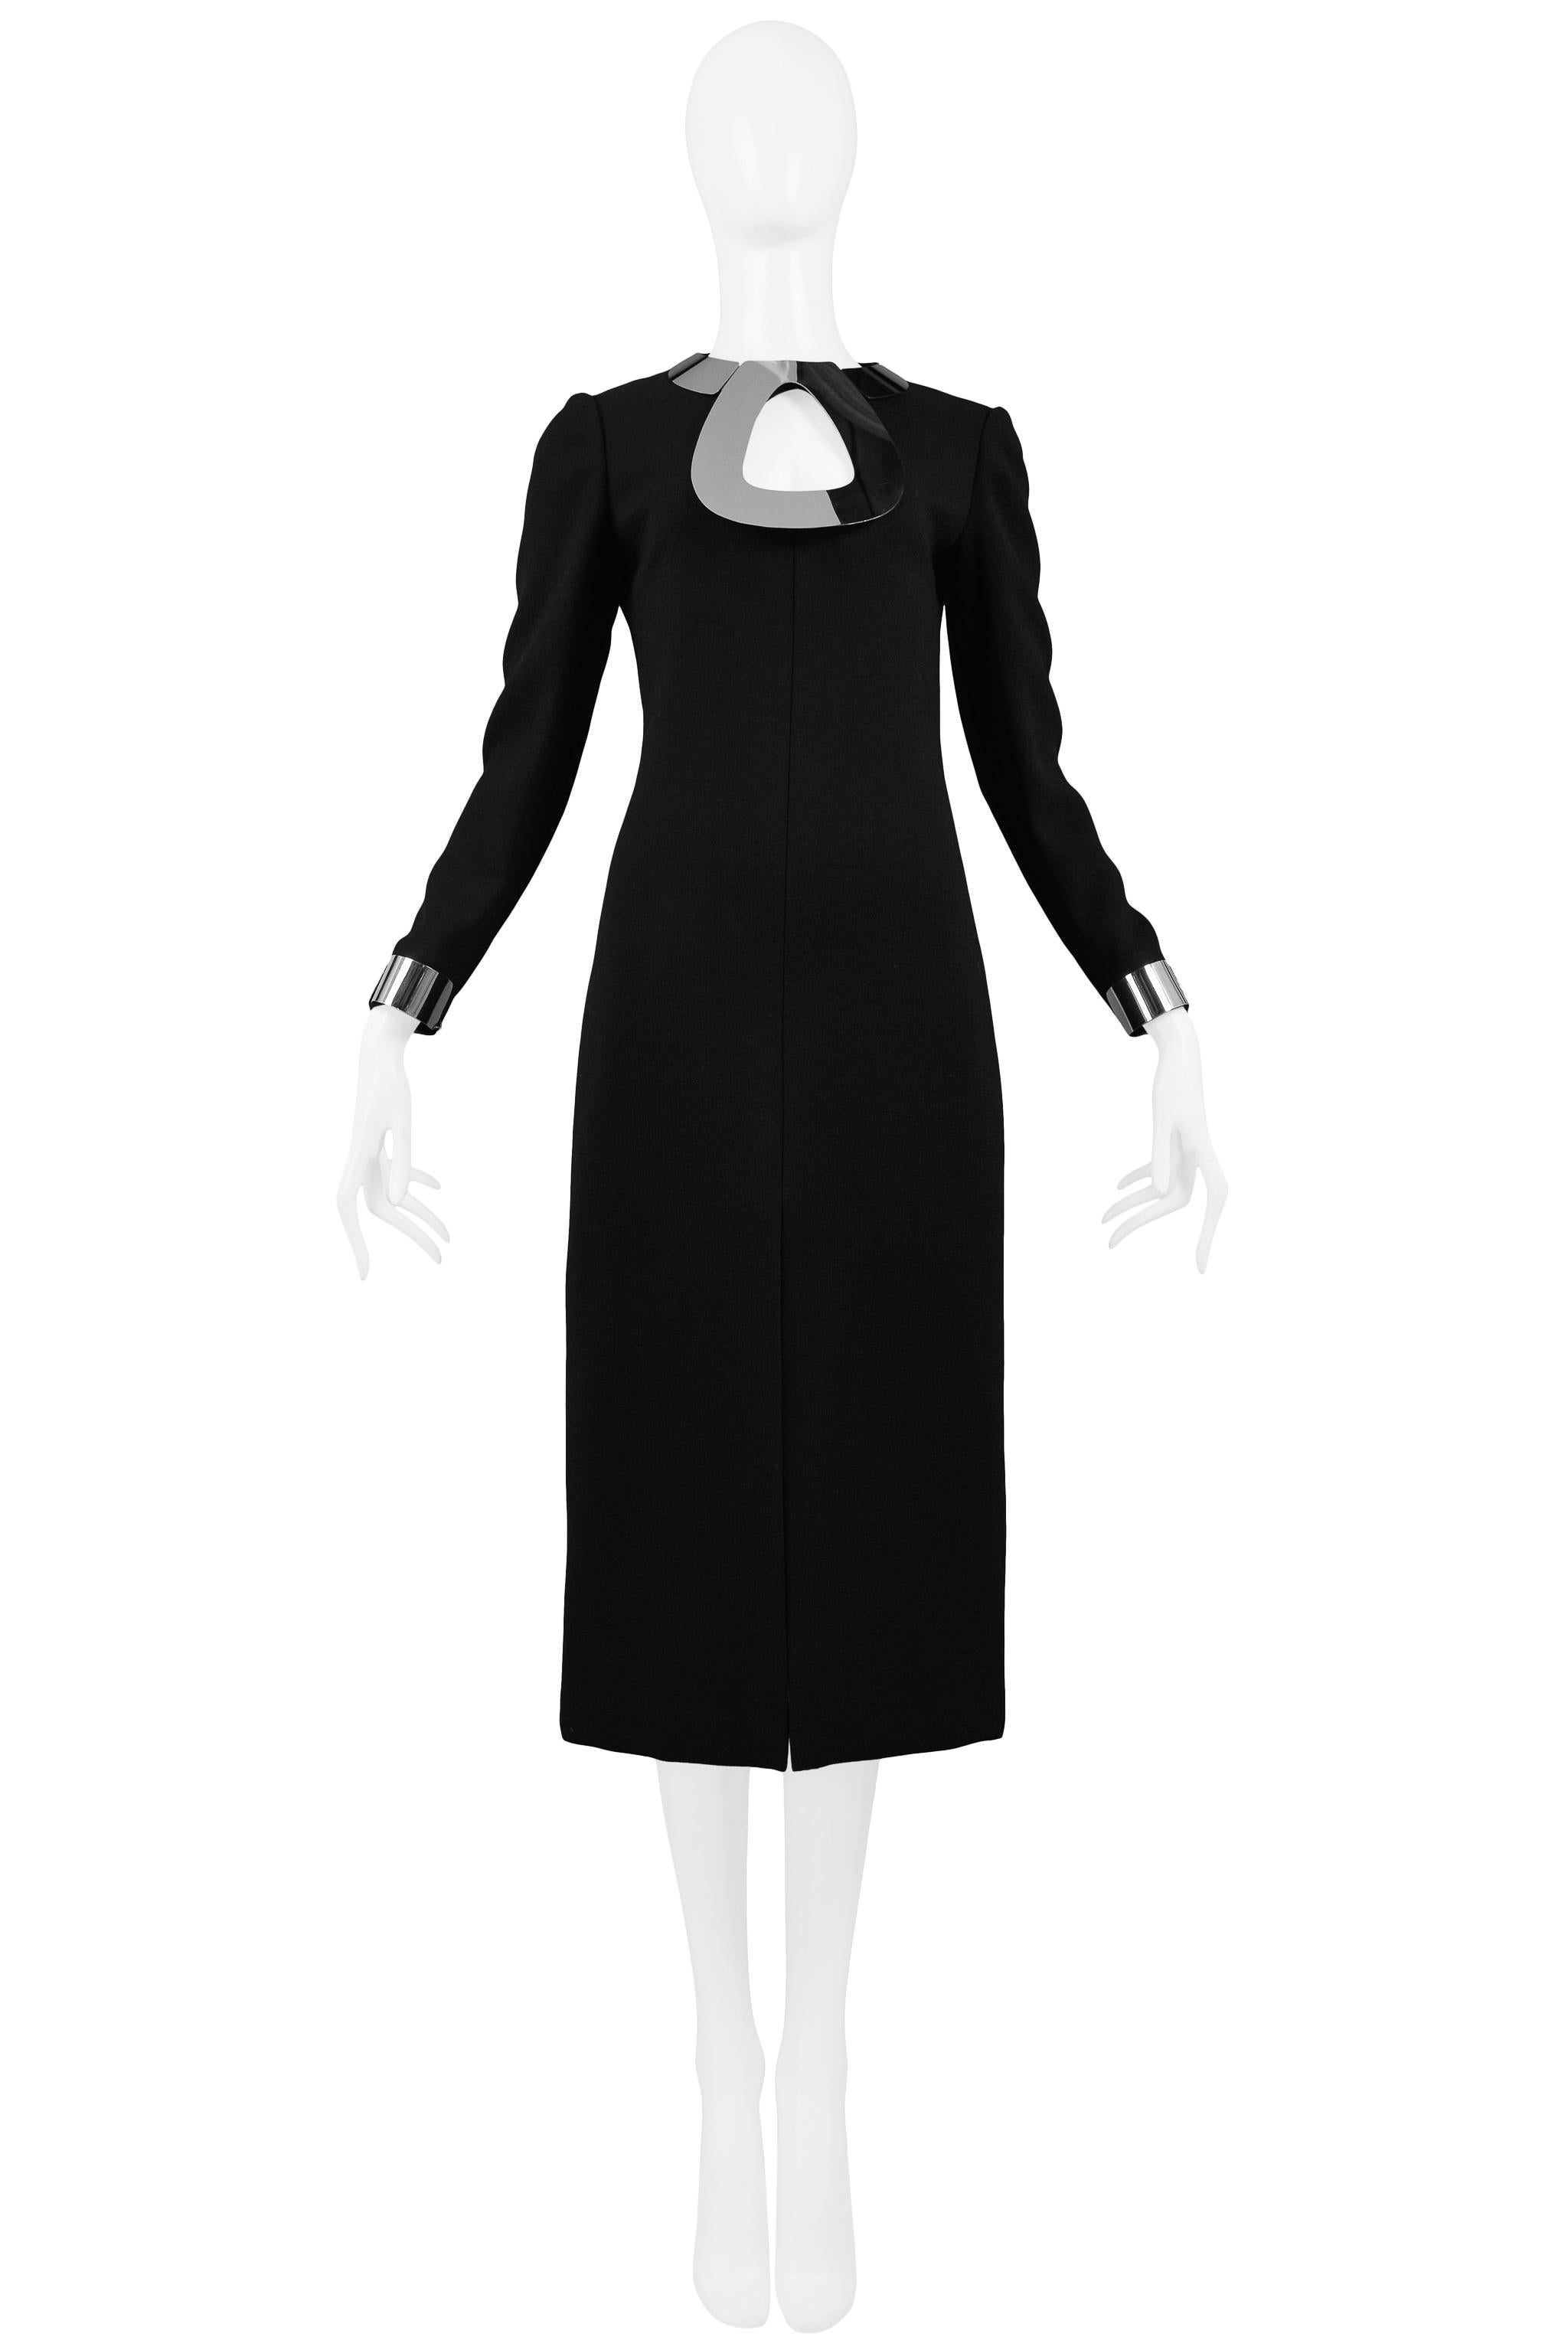 Vintage Pierre Cardin schwarzer Wolle Cocktail-Kleid, das eine Chrom-Metall-Halskette und Armband Manschetten, schlanke Körper, Mitte vorne geschlitzt, Mitte hinten Reißverschluss und unter dem Knie Länge verfügt. Circa 1968.

Ausgezeichneter